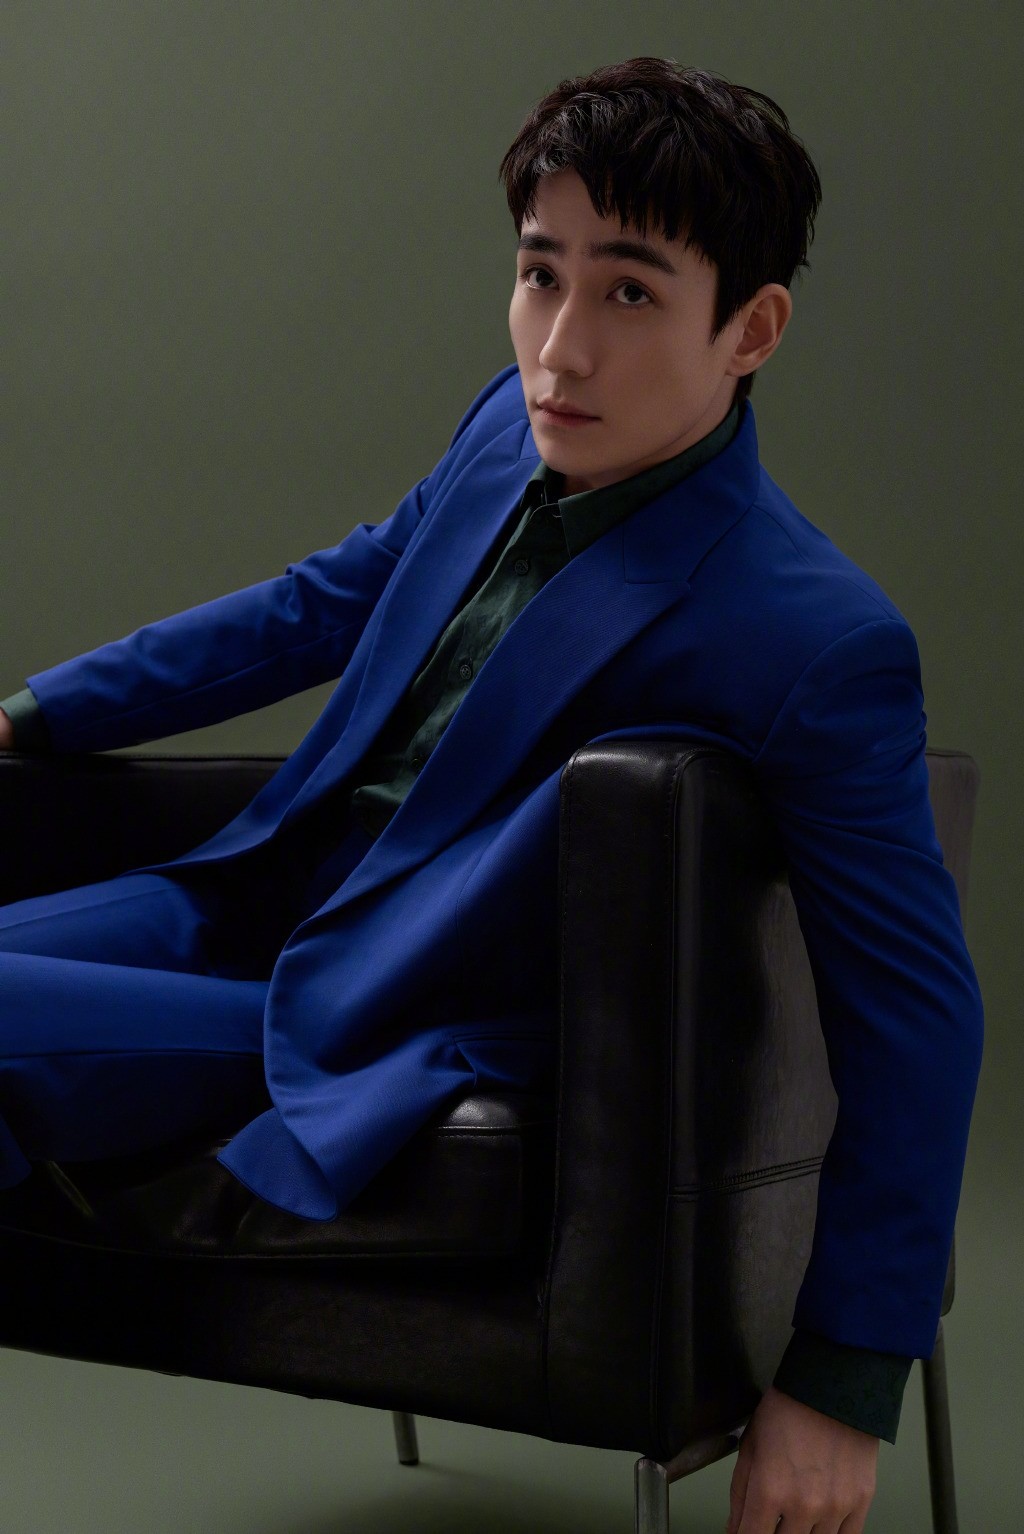 朱一龙蓝色西服套装俊逸风雅写真